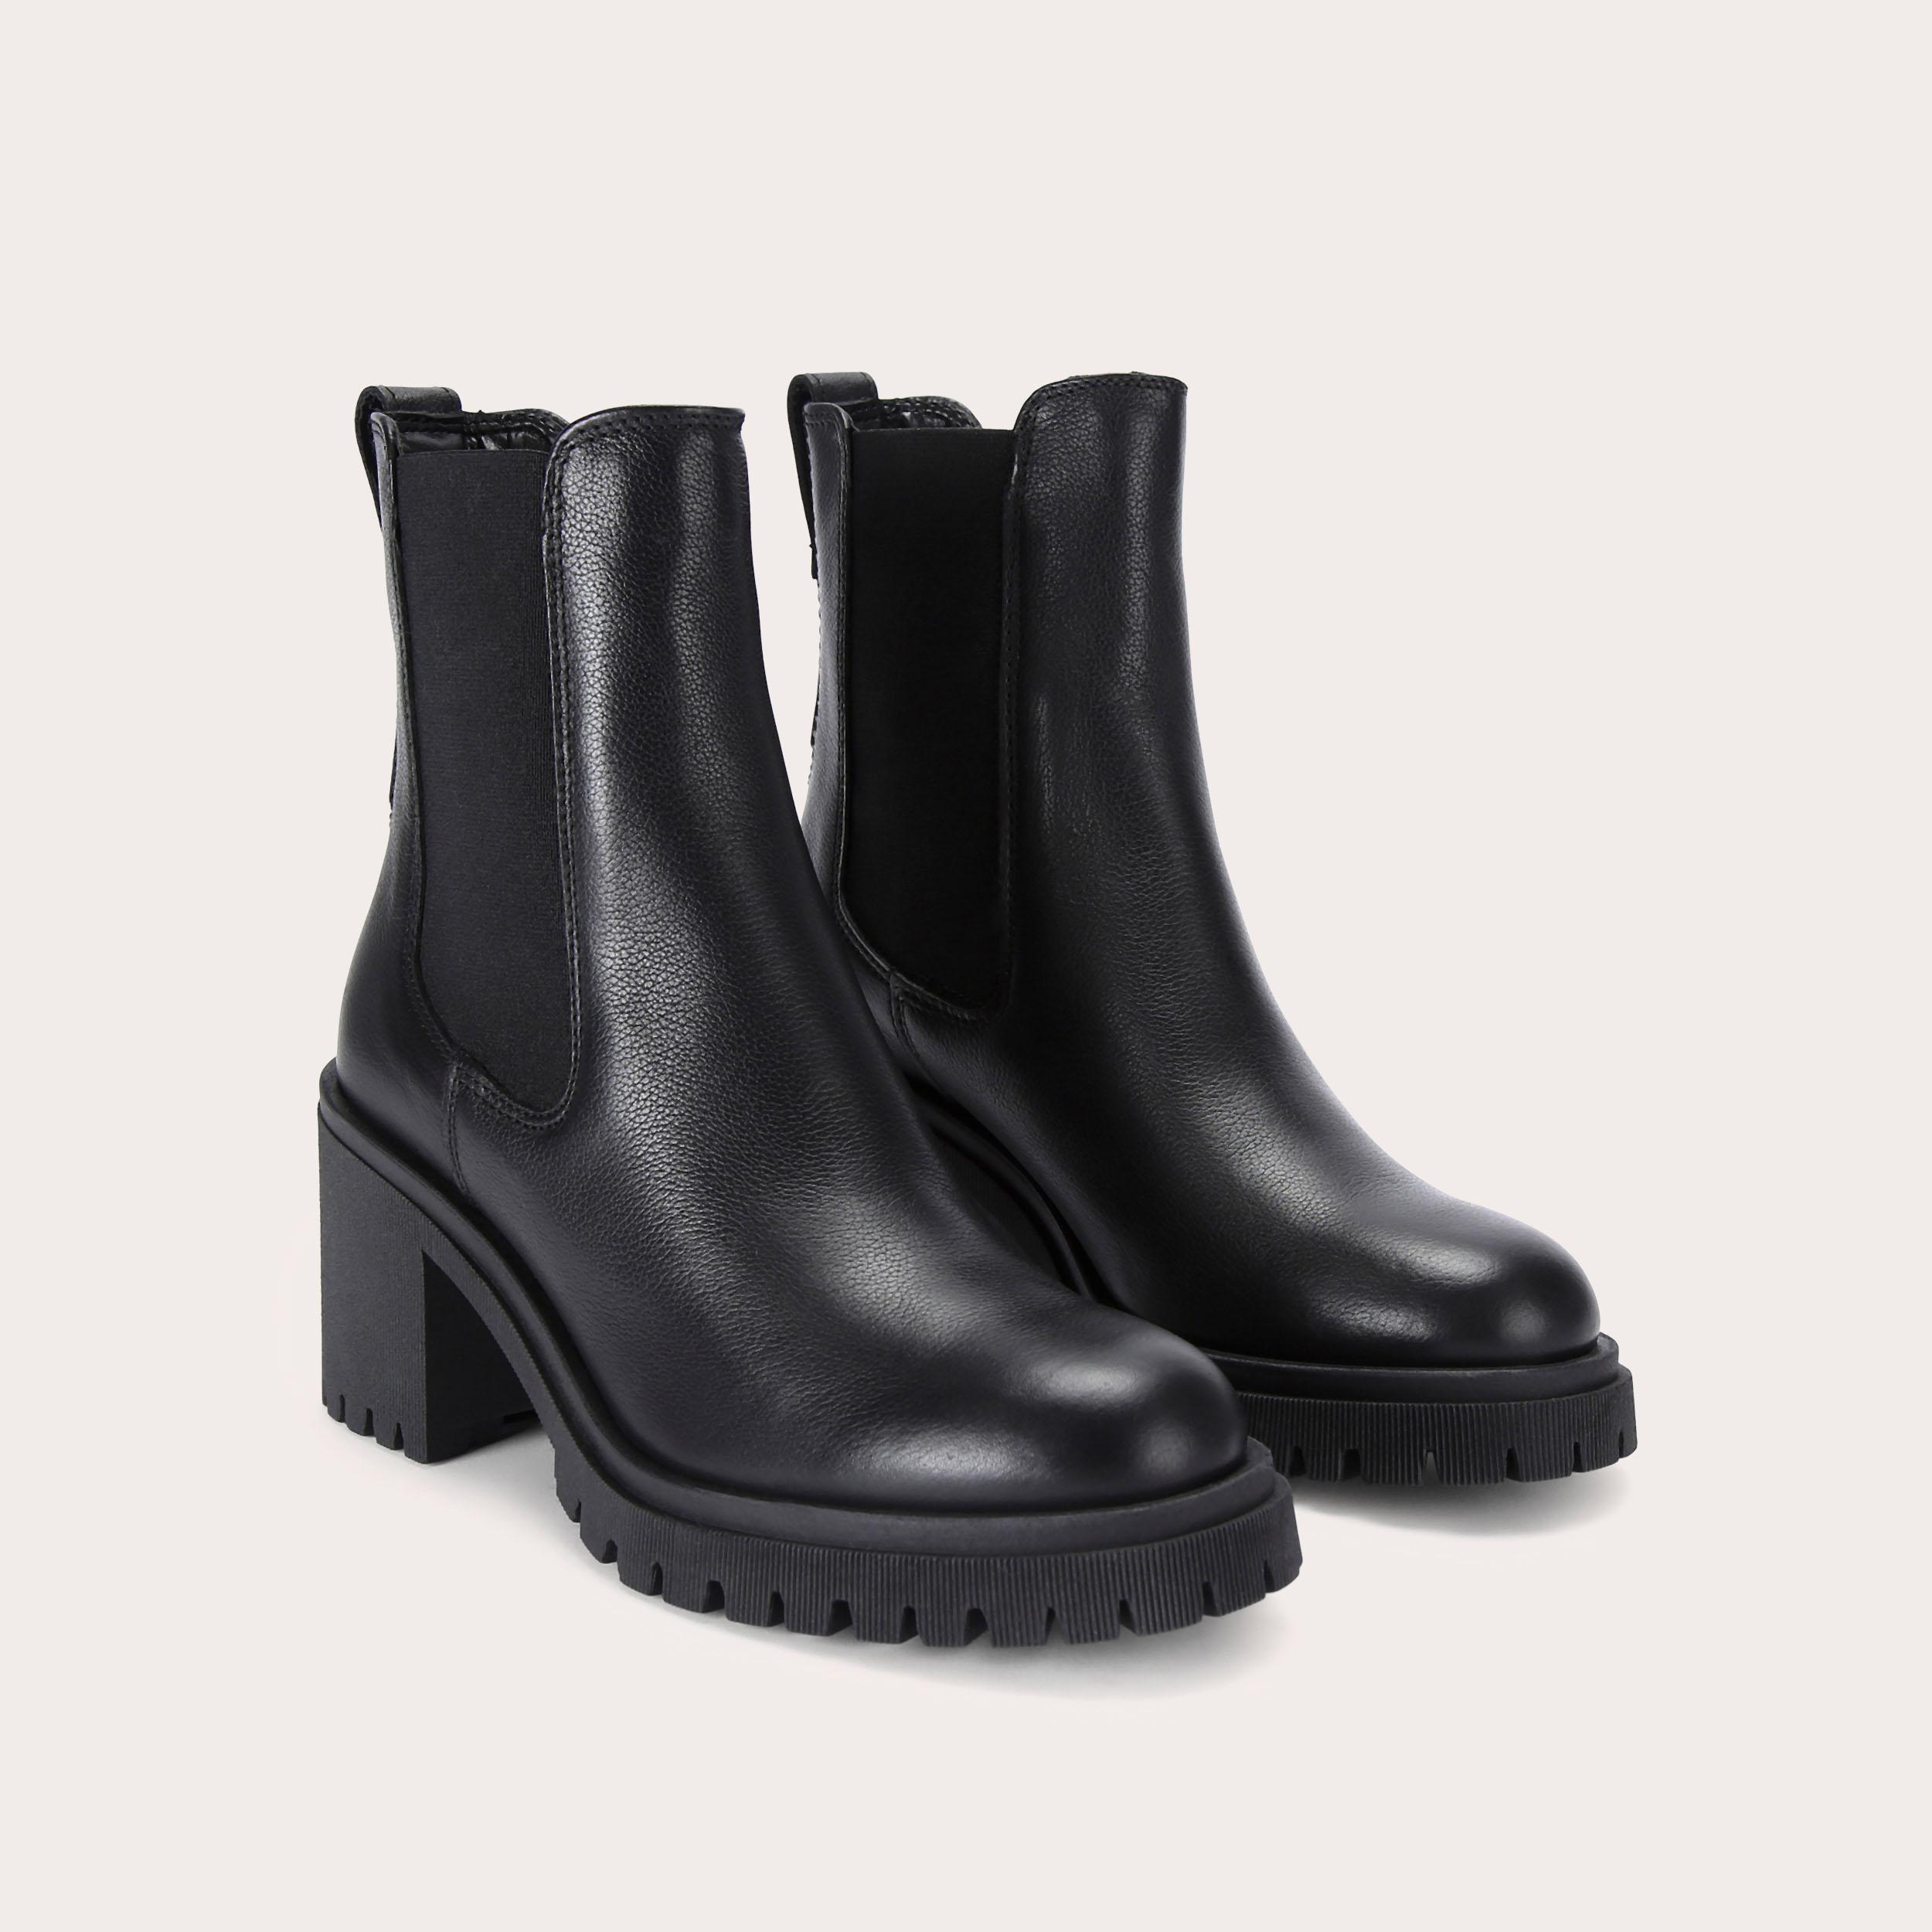 MEGA Black Leather Ankle Boots by CARVELA COMFORT